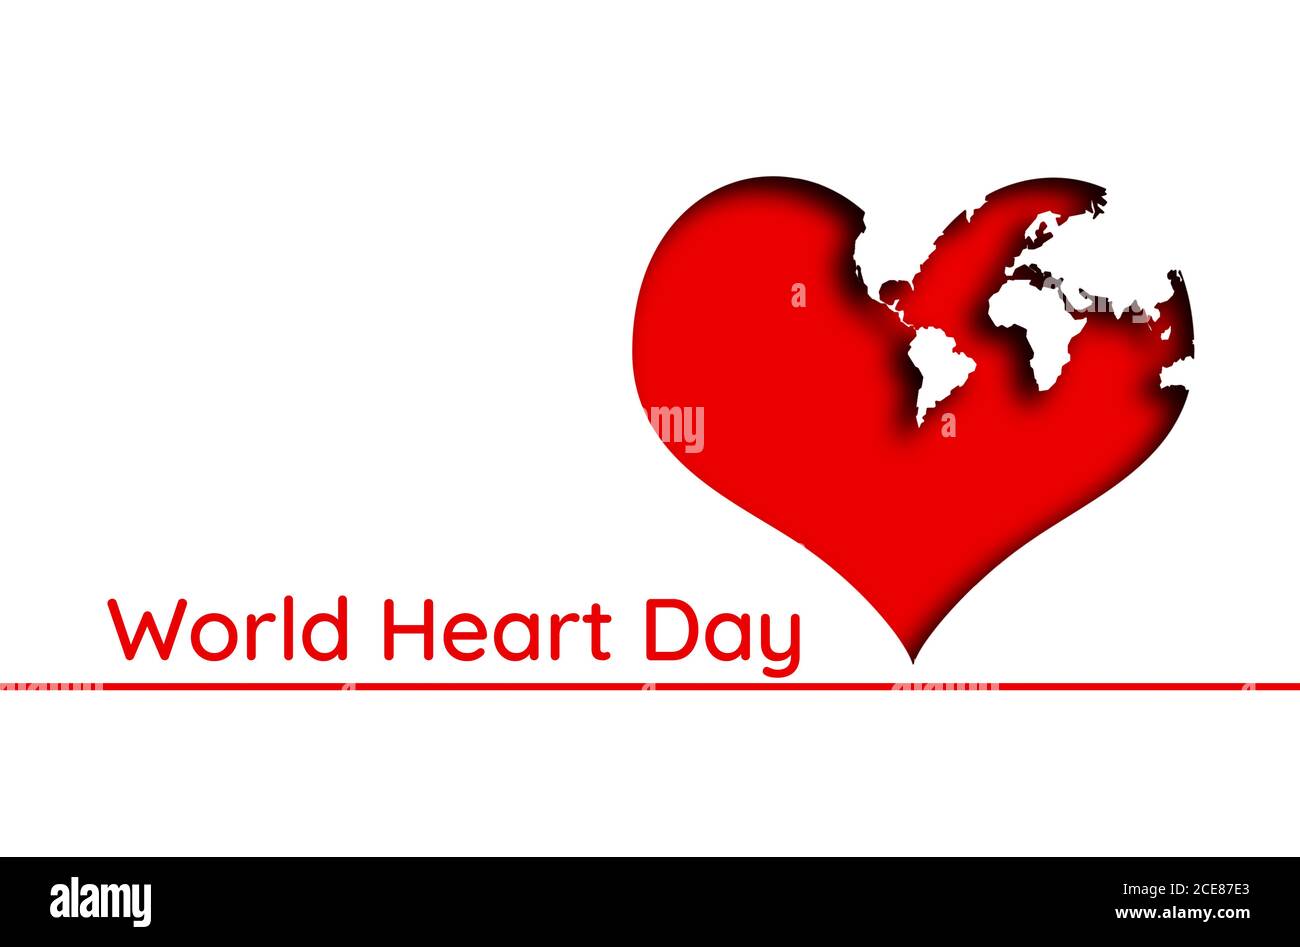 Un coeur rouge avec des continents représentés sur lui, sur un fond blanc. Texte. Concept de journée mondiale du coeur. Banque D'Images